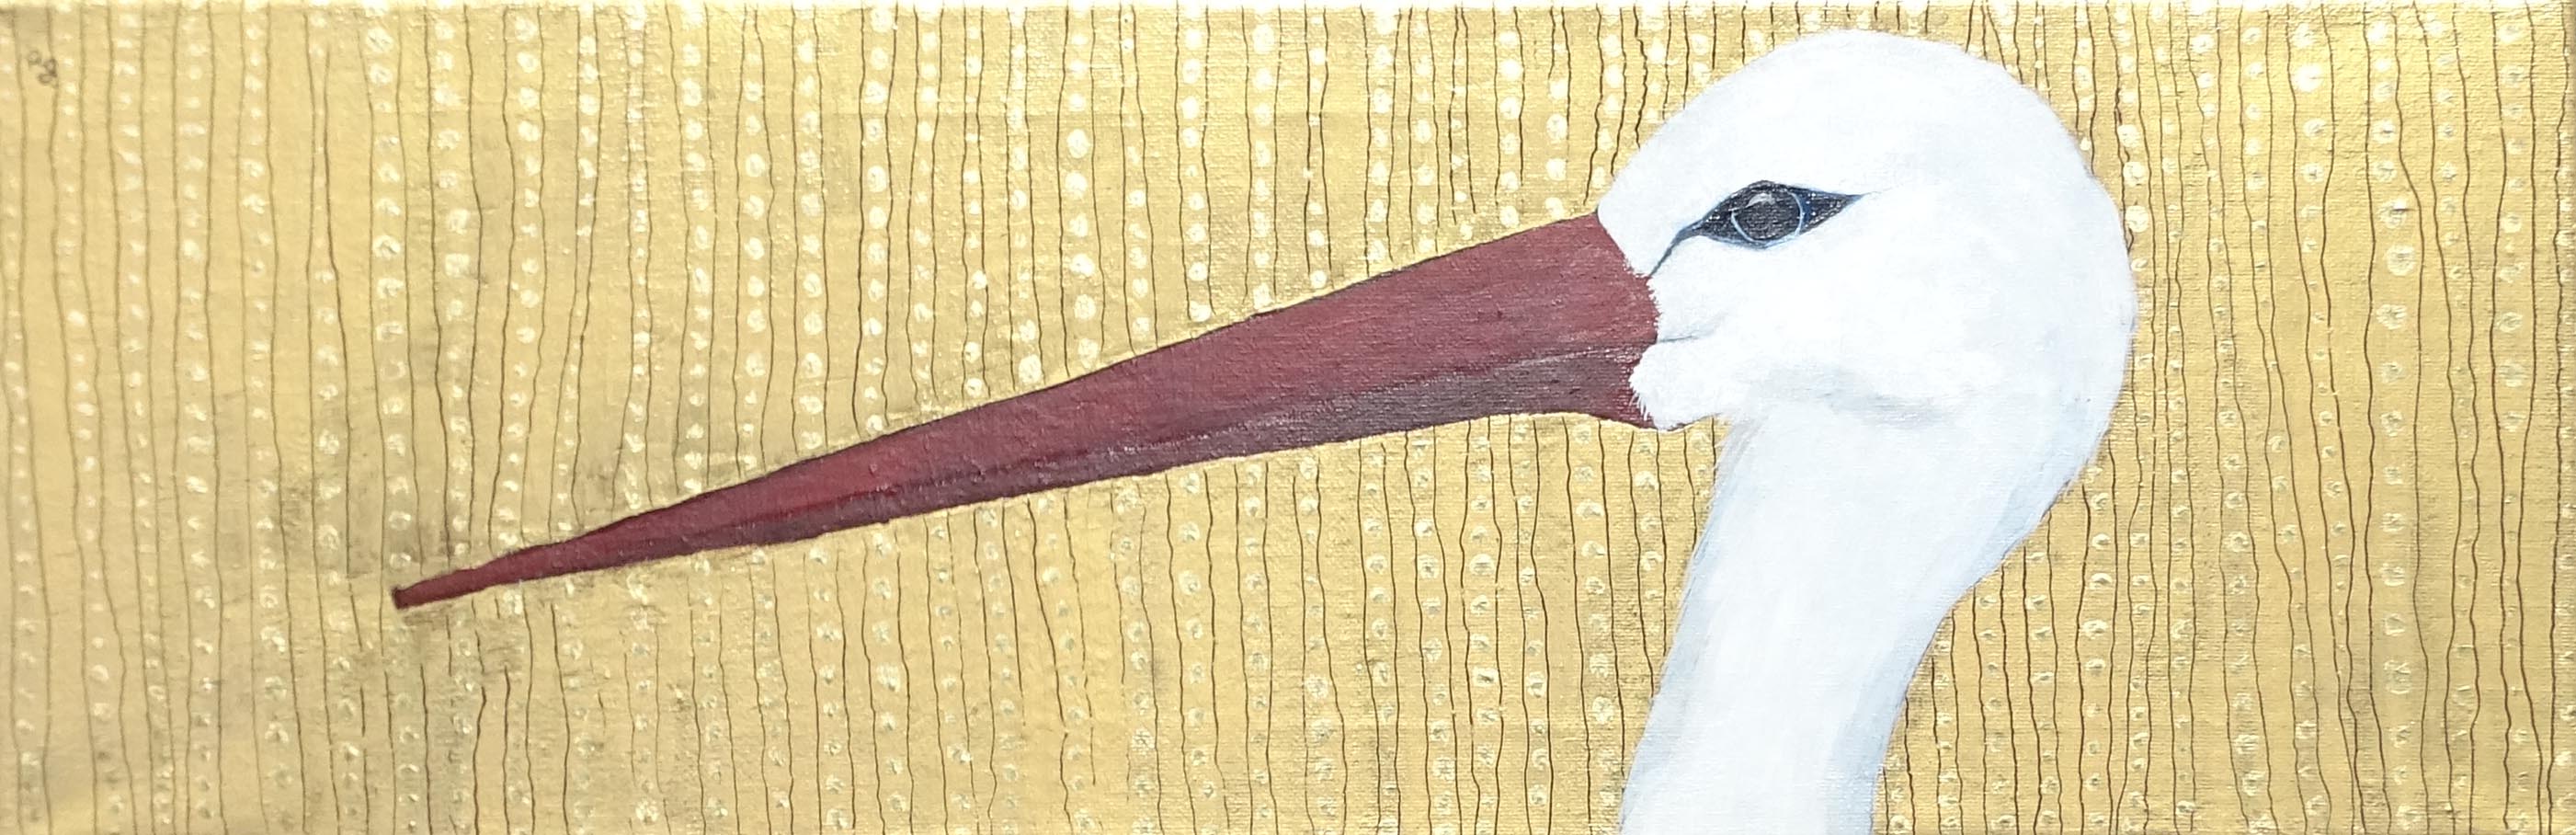 "Stork" - patrick gourgouillat - 2015